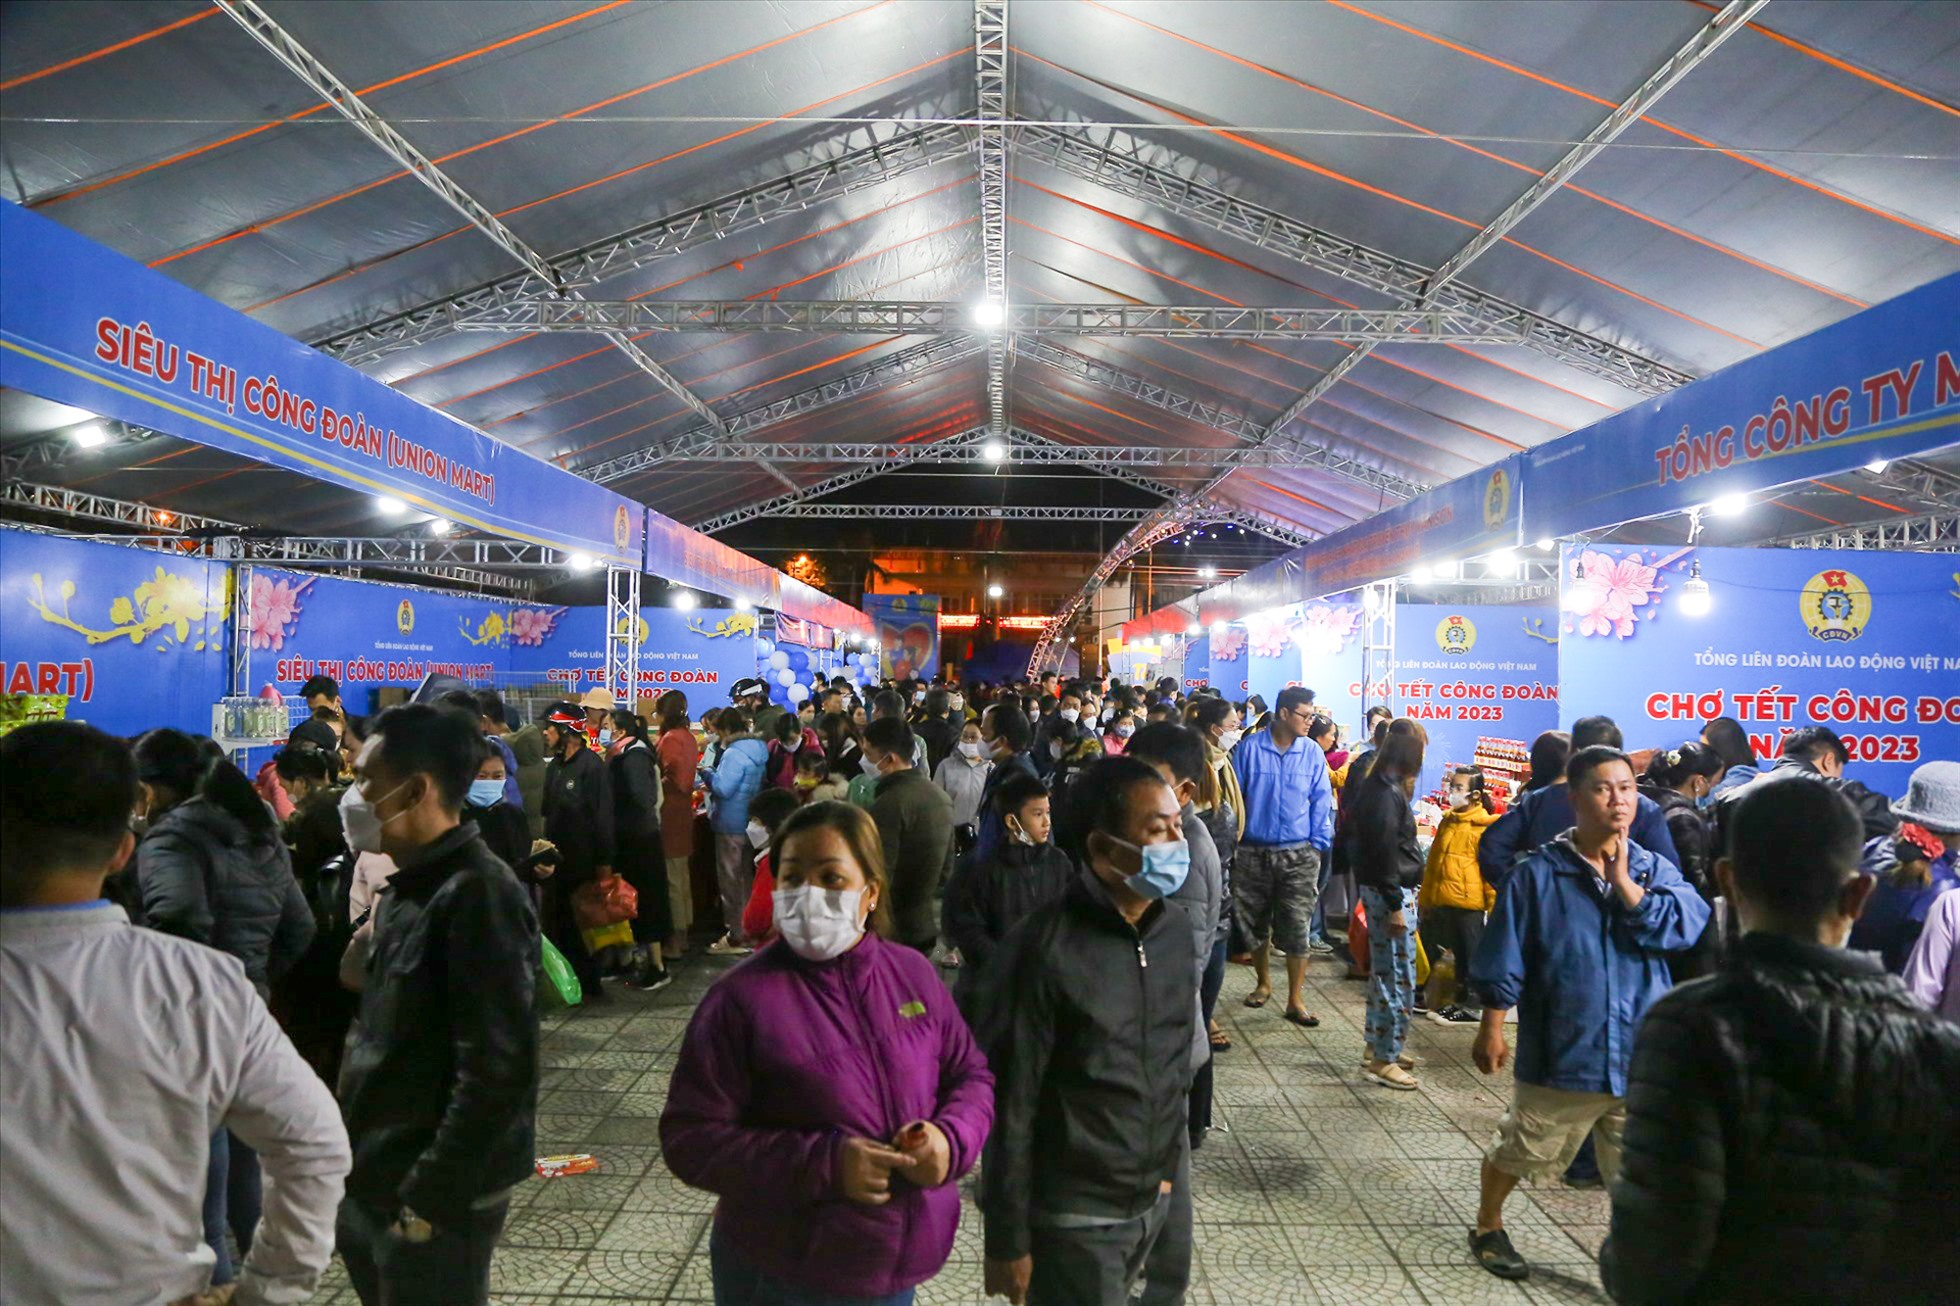 “Chợ Tết Công đoàn năm 2023” Đà Nẵng được tổ chức tại Quảng trường Trung tâm hành chính quận Liên Chiểu từ ngày 06/01/2023 đến ngày 08/01/2023 với hơn 80 gian hàng.